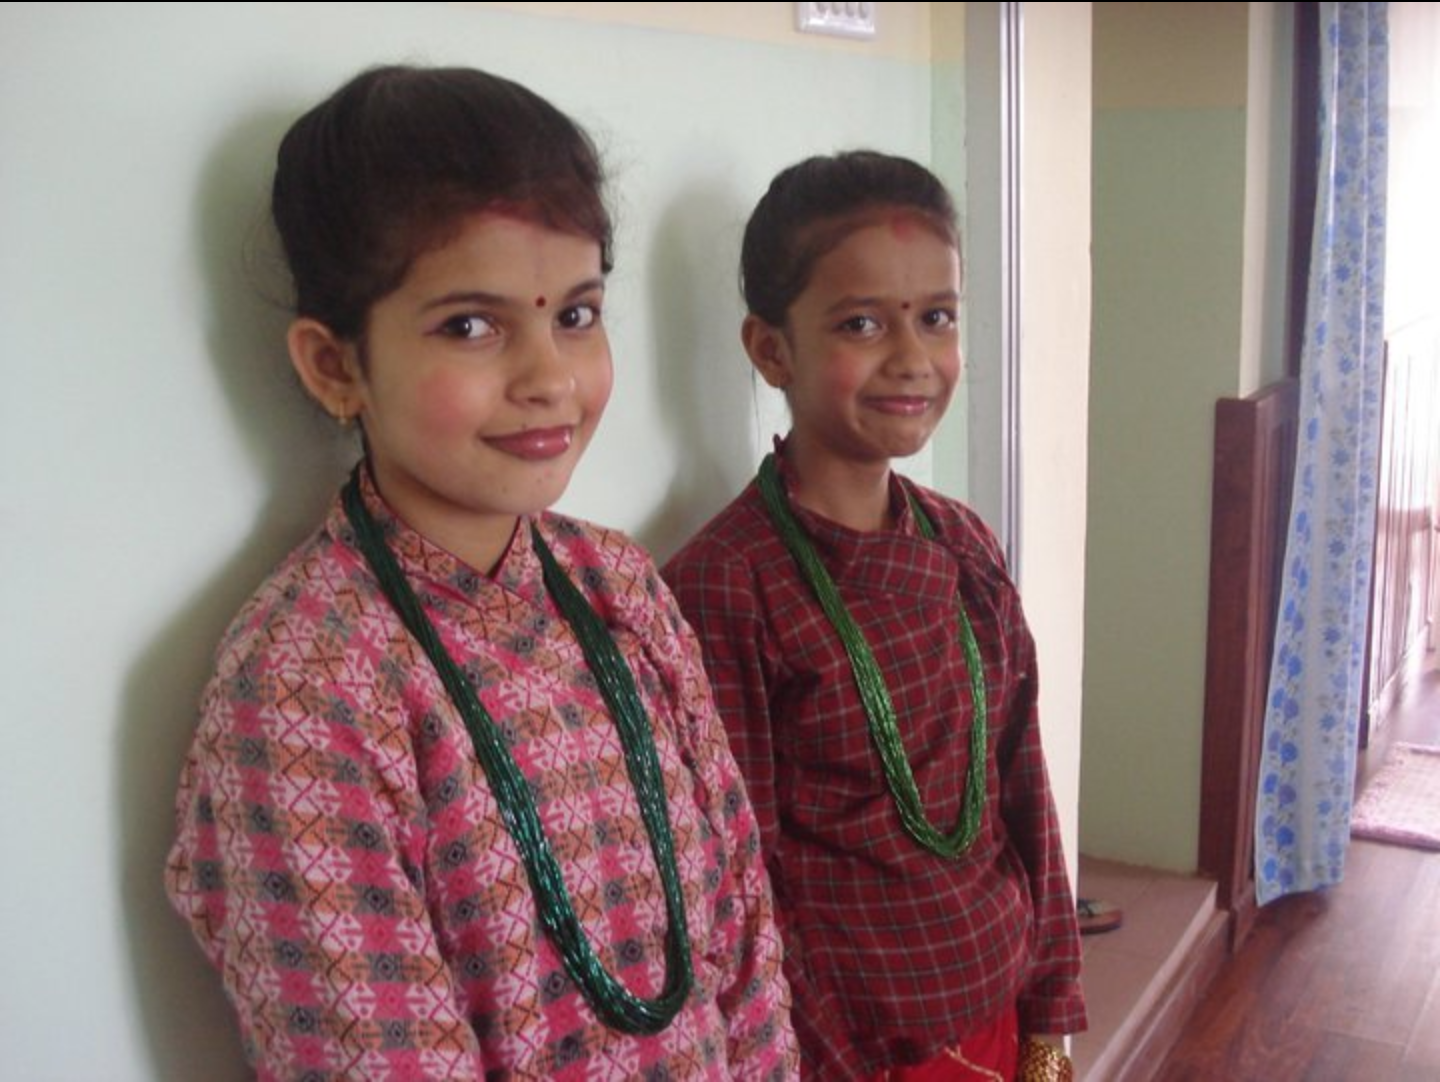 Nanu and Priti ready to perform a cultural dance.